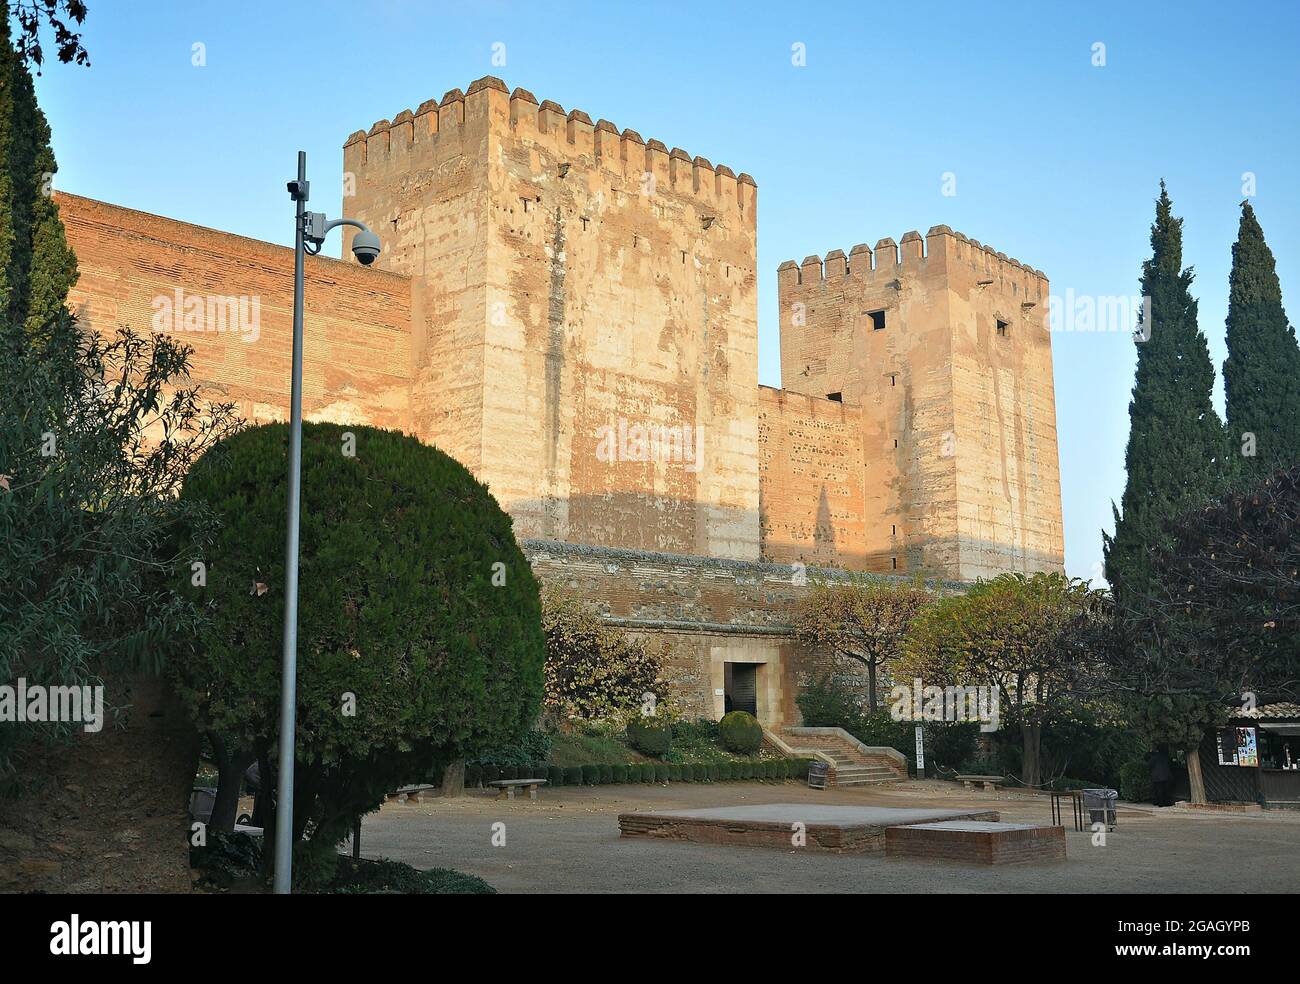 Alcazaba of the Alhambra in Granada-Spain Stock Photo